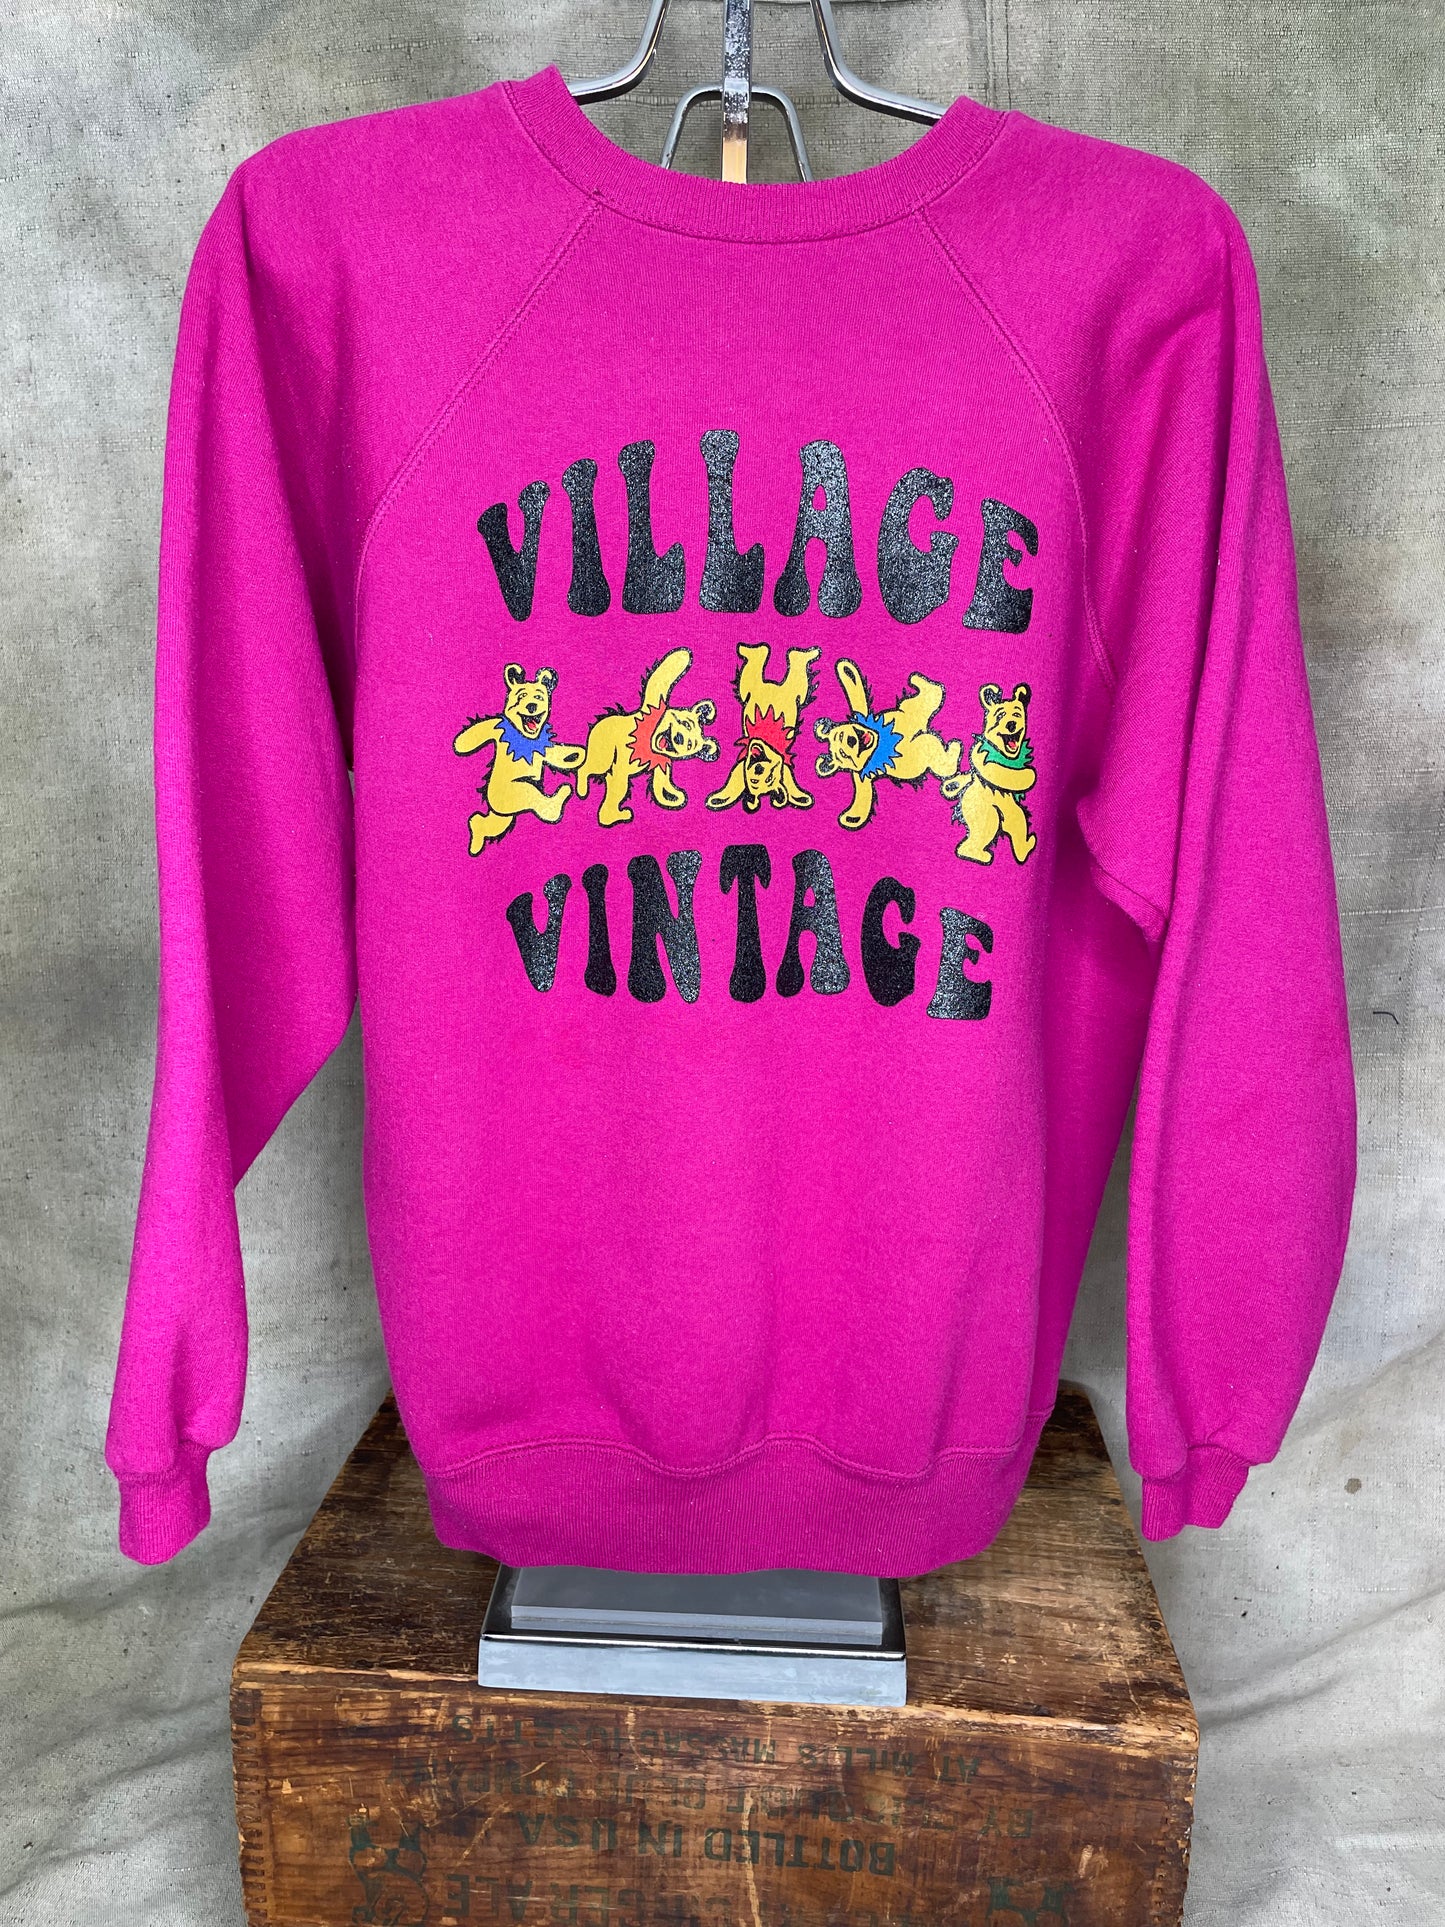 Village Vintage Frolicking Bear Logo on Hand Sourced Vintage Sweatshirt Blank M/L